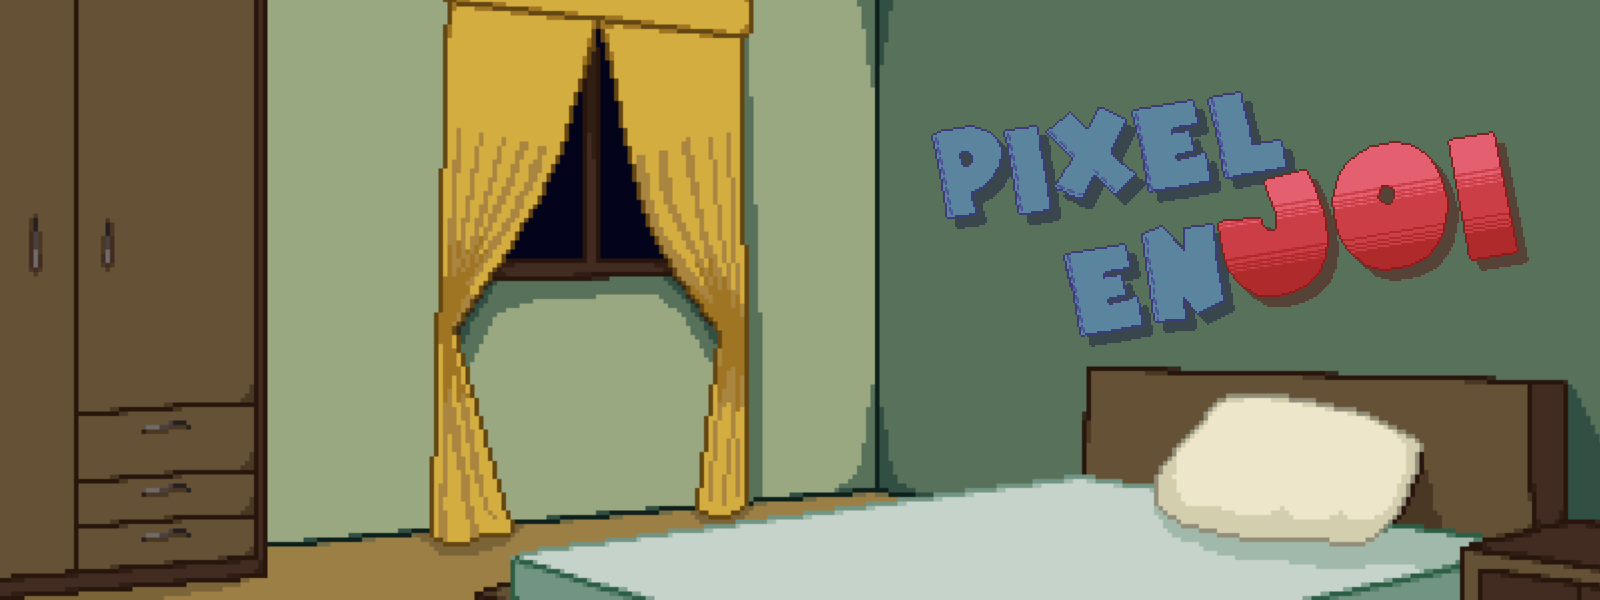 Pixel enJOI Chapter 2 [Demo]